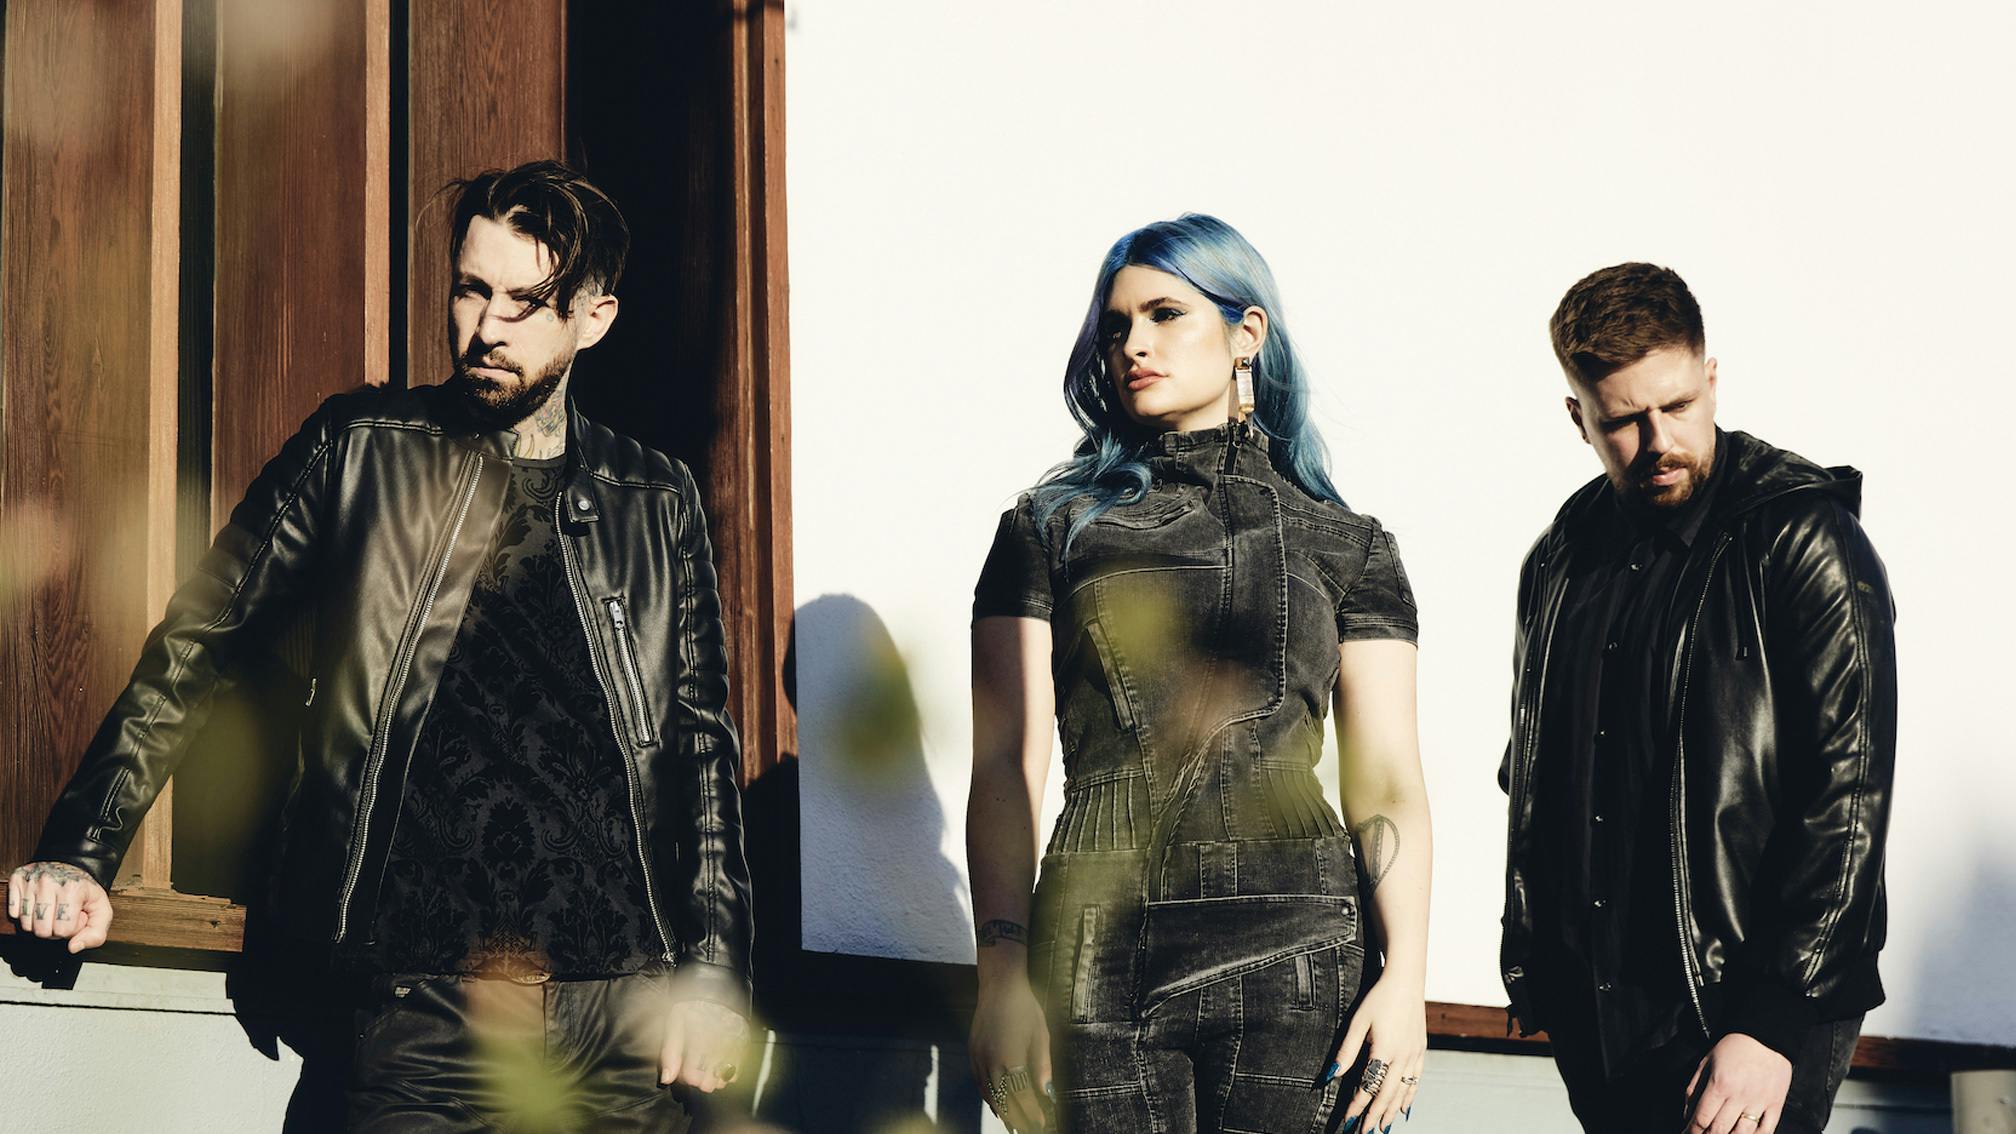 Spiritbox have announced their debut album, Eternal Blue